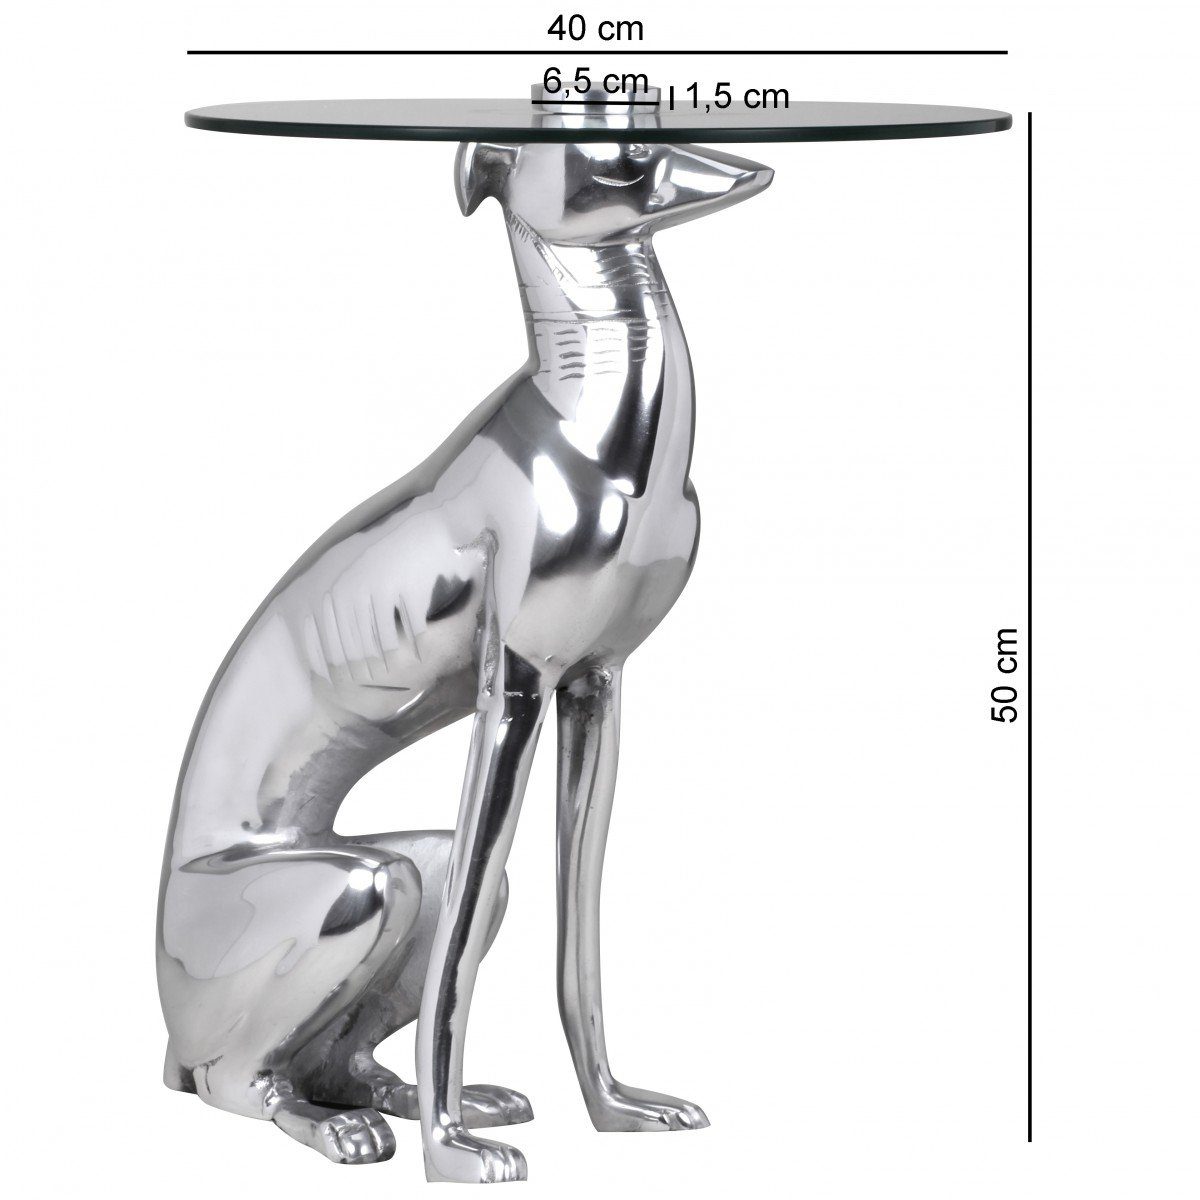 möbelando Beistelltisch Design Deko Beistelltisch Figur Aluminium aus Design Beistelltisch Deko DOG Silber Farbe aus DOG Figur Aluminium Silber, Farbe